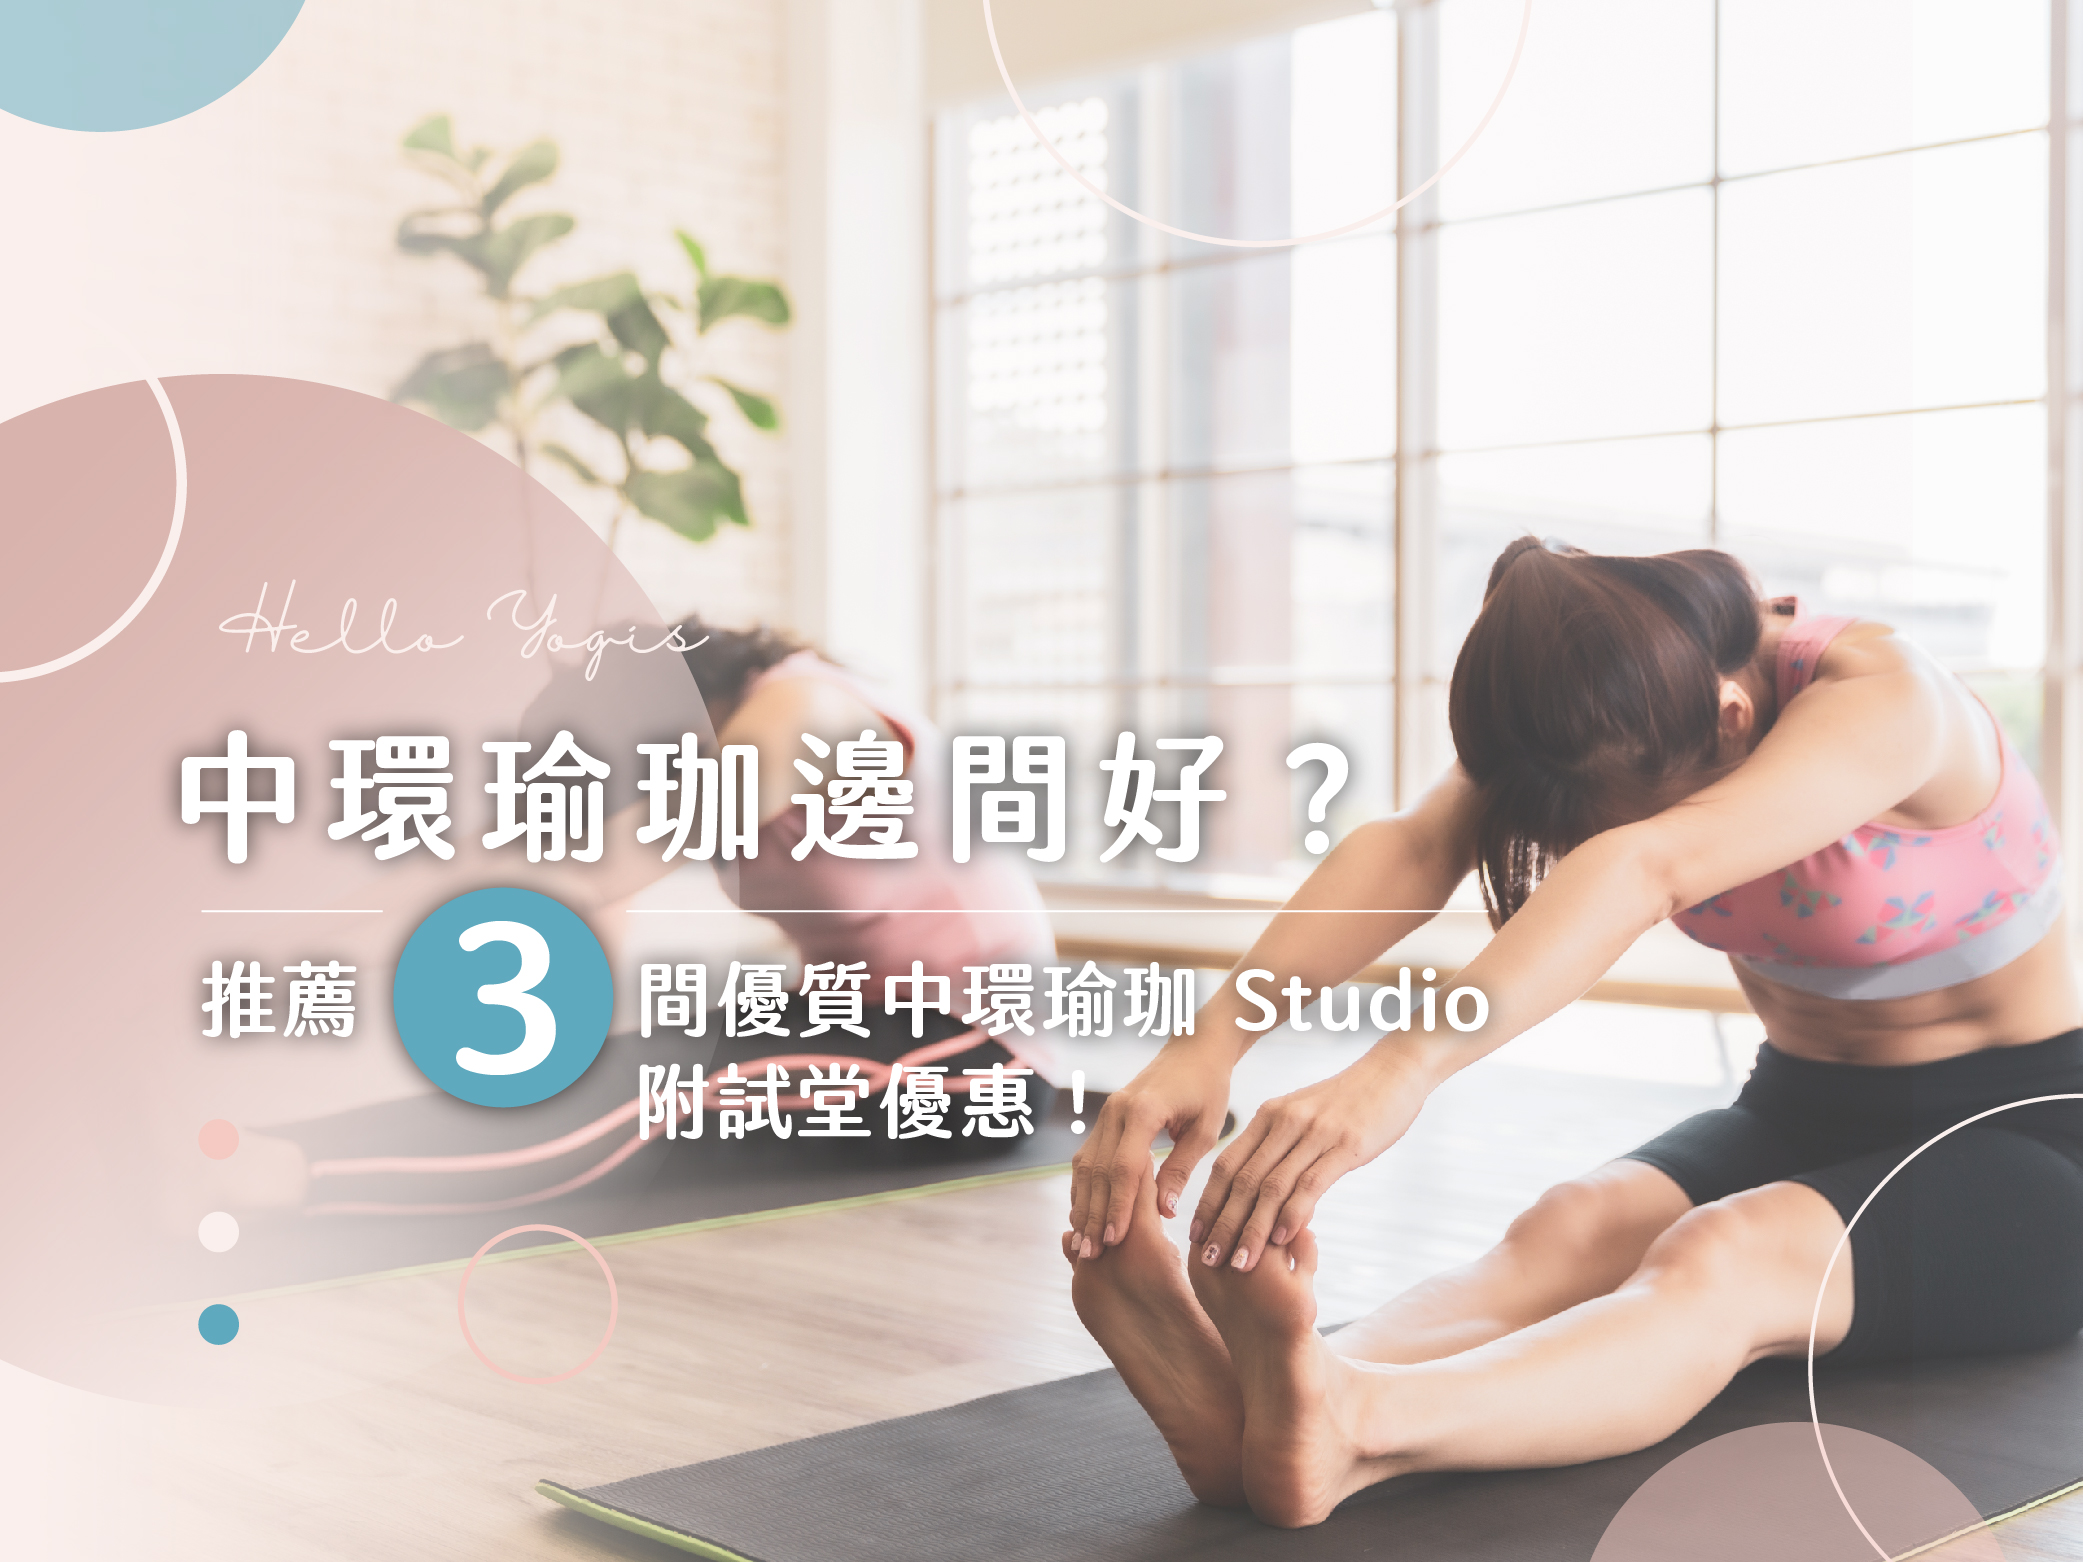 48 中環瑜珈 瑜珈教室